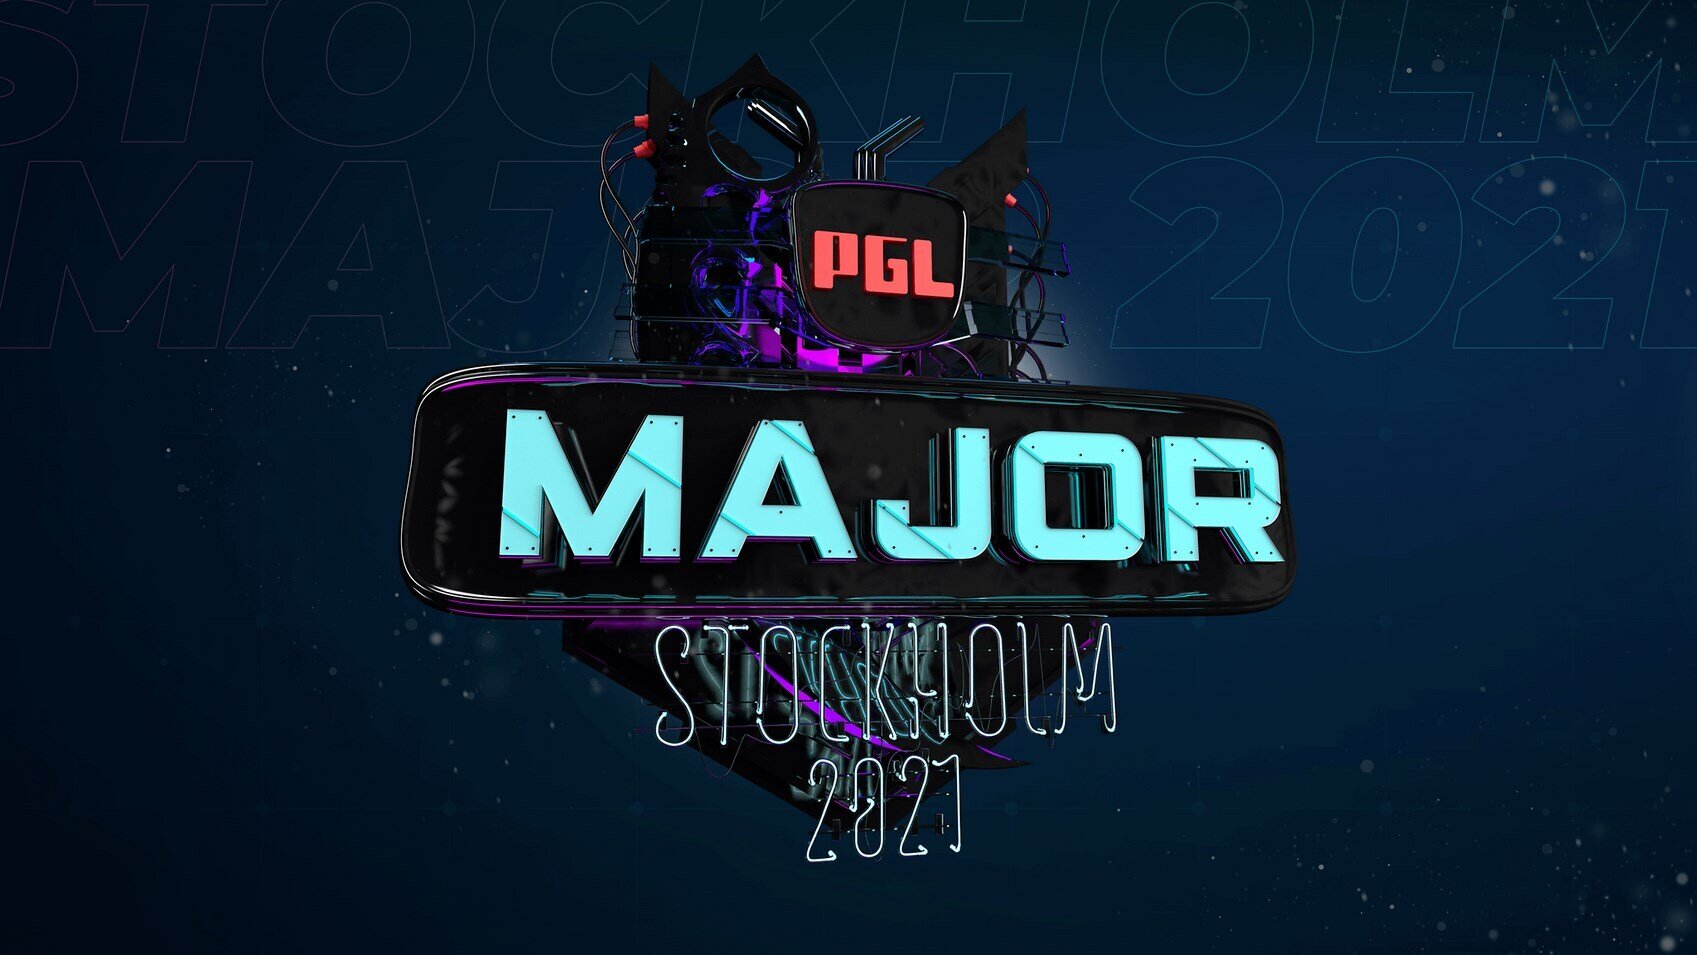 PGL Major Stockholm